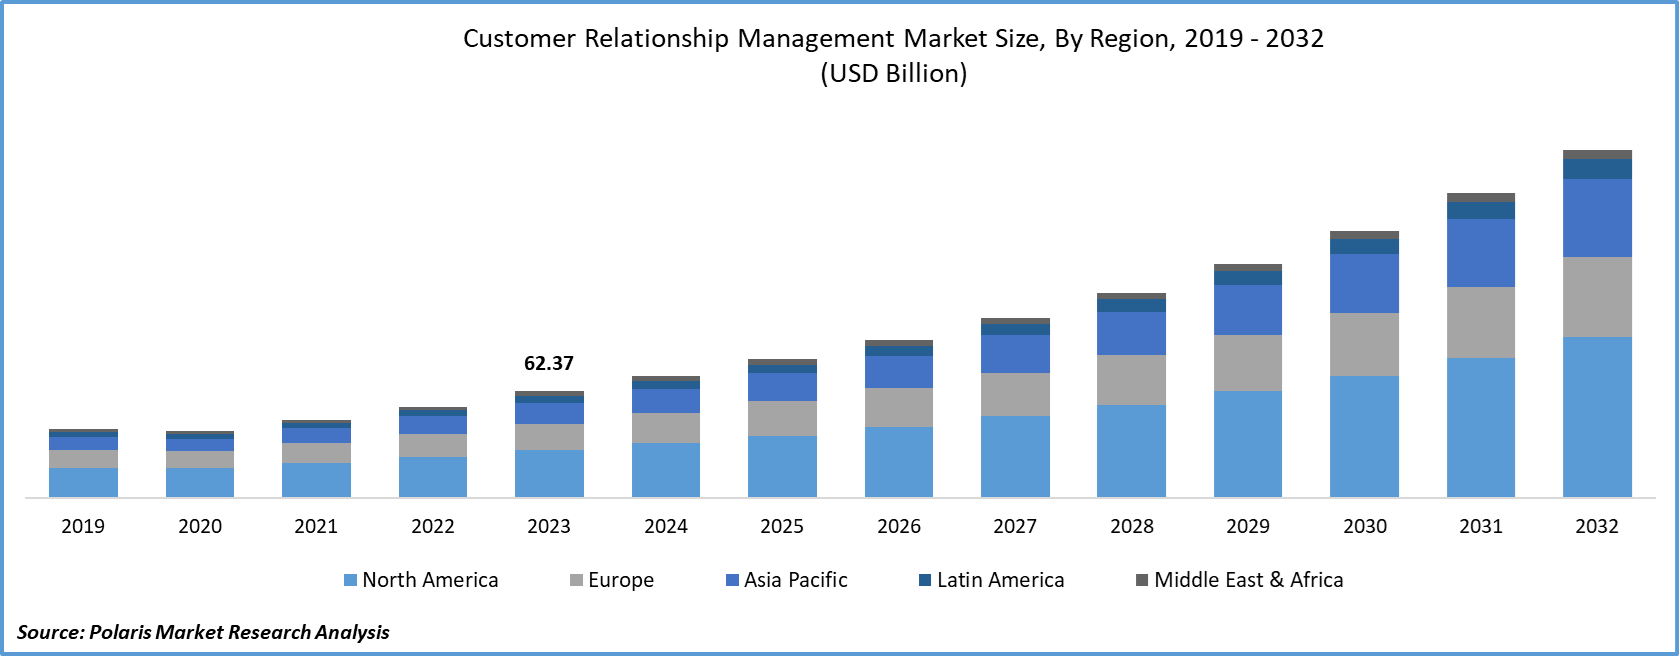 Customer Relationship Management Market Size